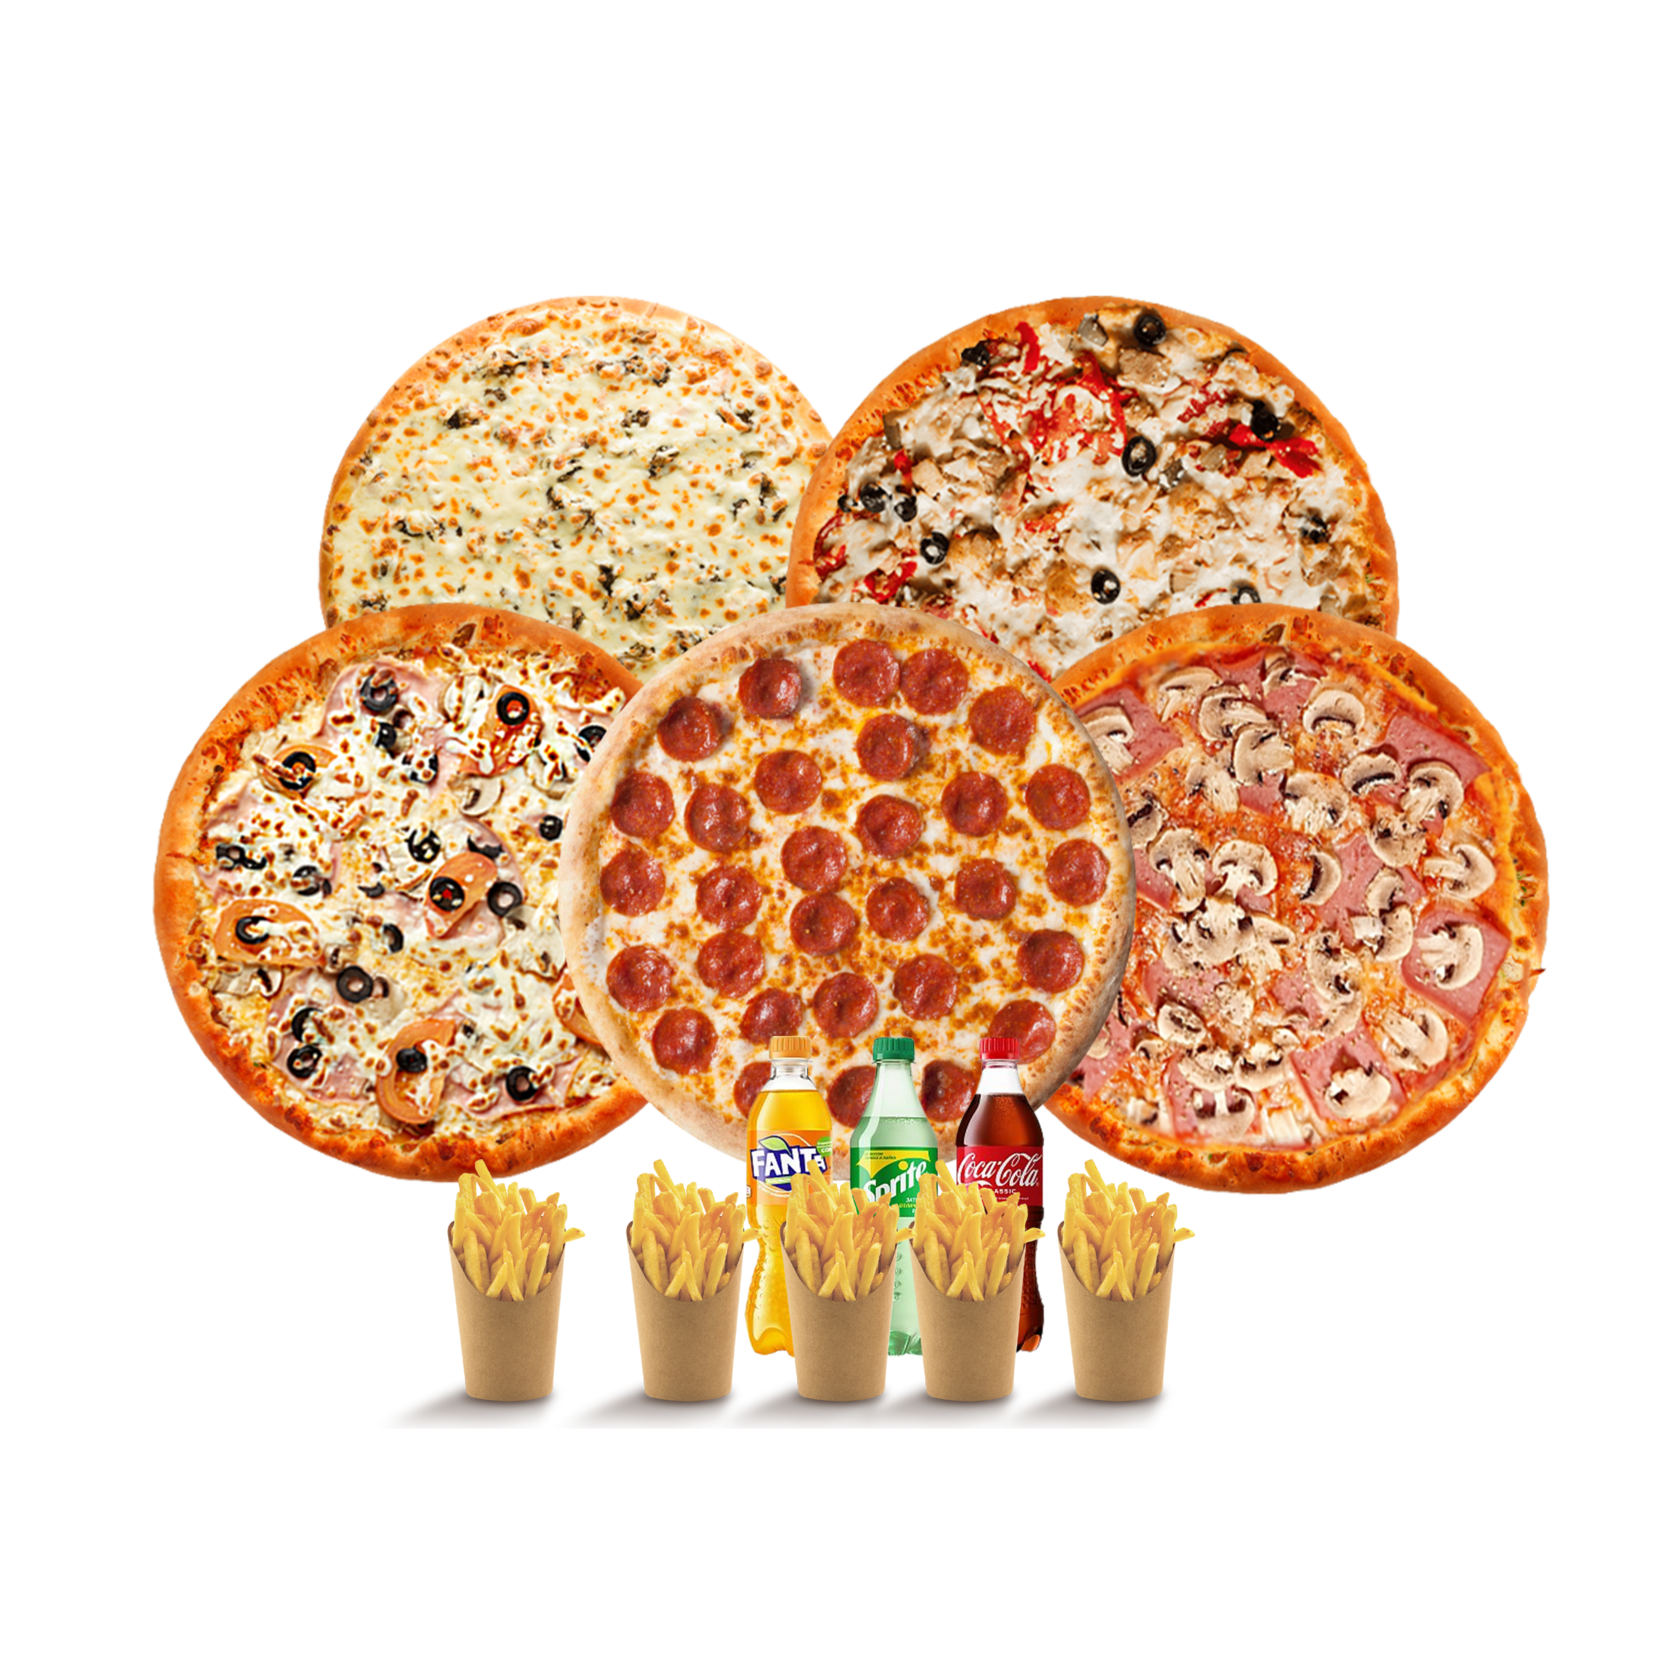 5 пицца отзывы. Пицца в ассортименте. Комбо из 5 пицц. Пицца акция 4 за 1000.